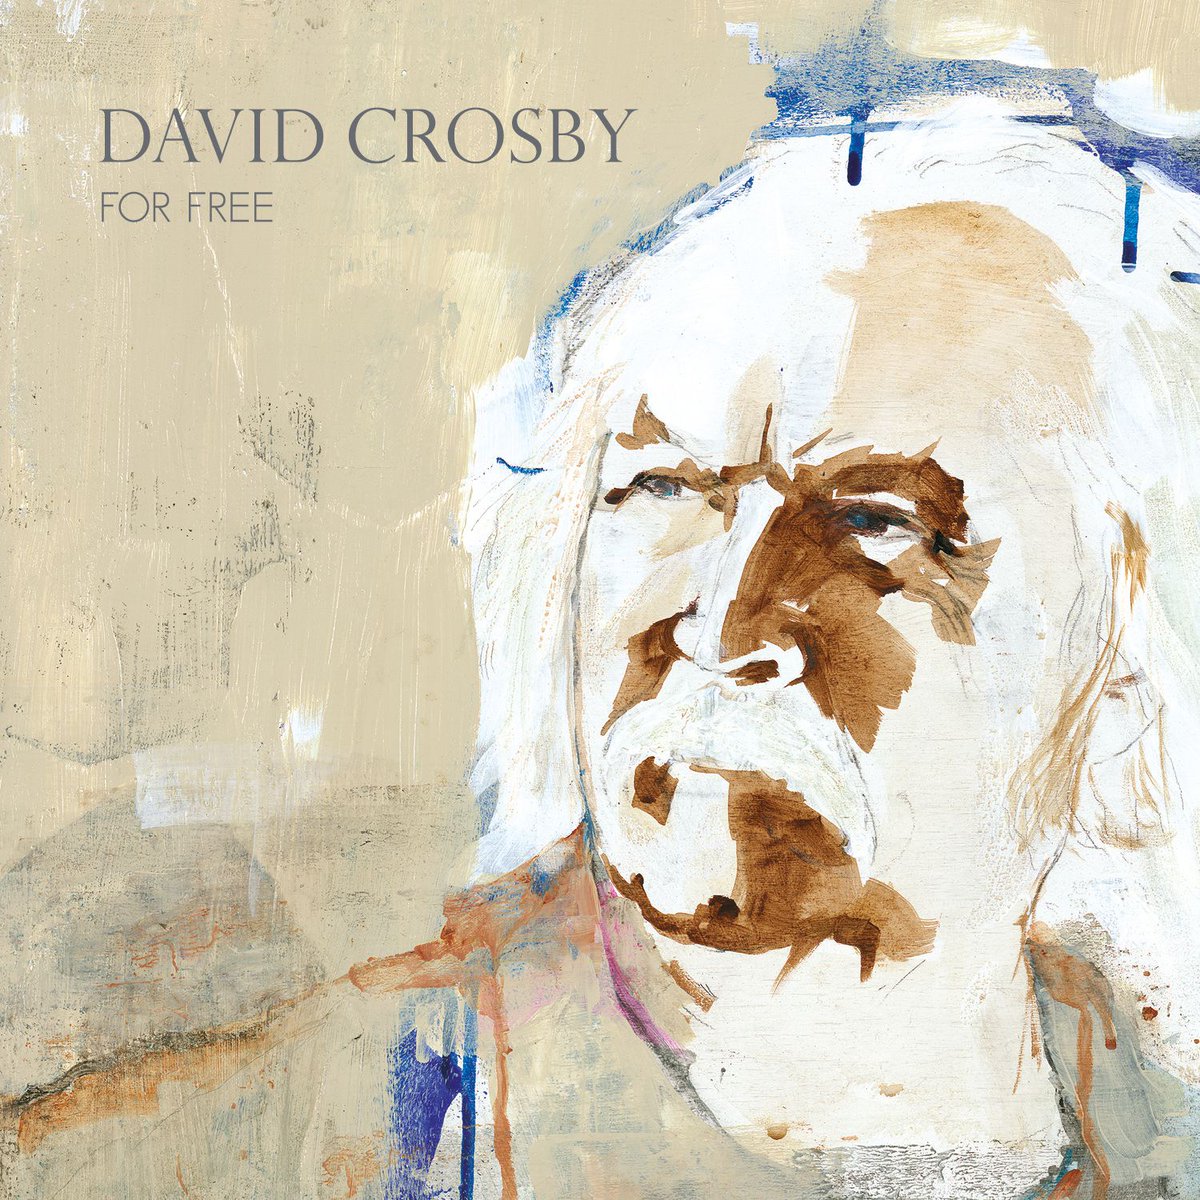 Le nouvel album de @thedavidcrosby « For Free » est désormais disponible ! ✨ davidcrosby.lnk.to/ForFree